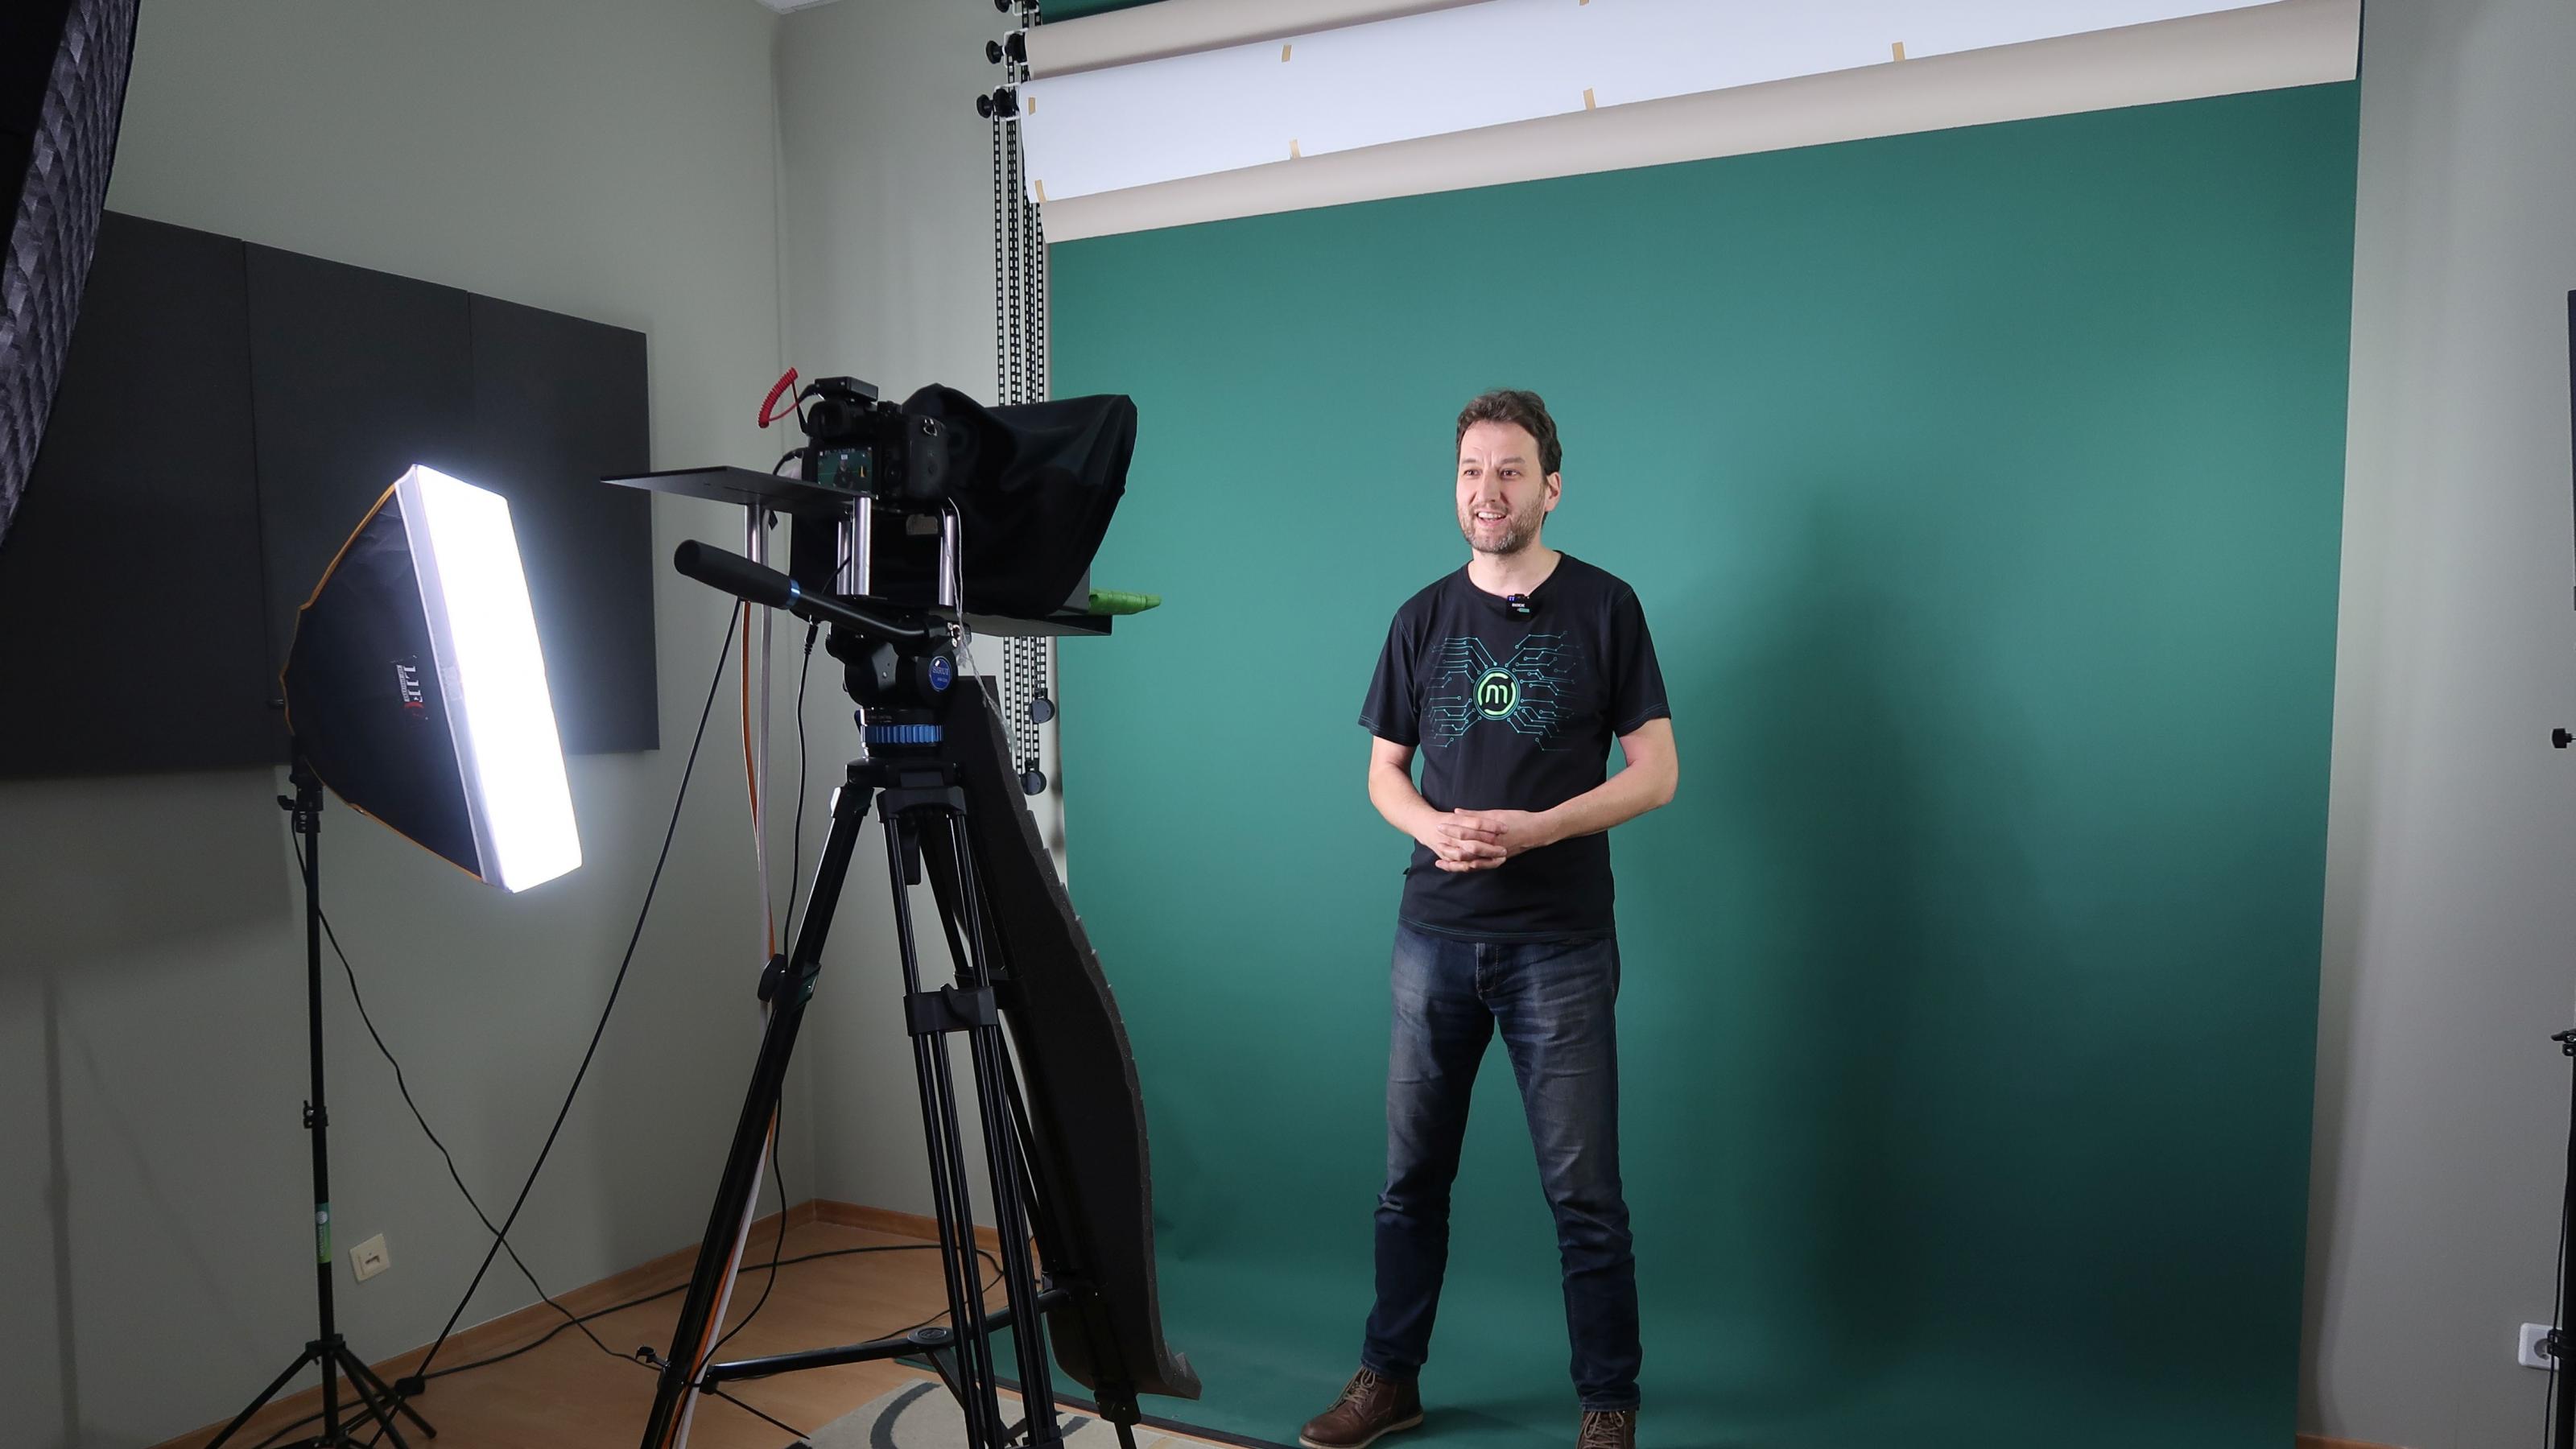 Stefan Moeller steht vor einer grünen Leinwand und wird gefilmt.